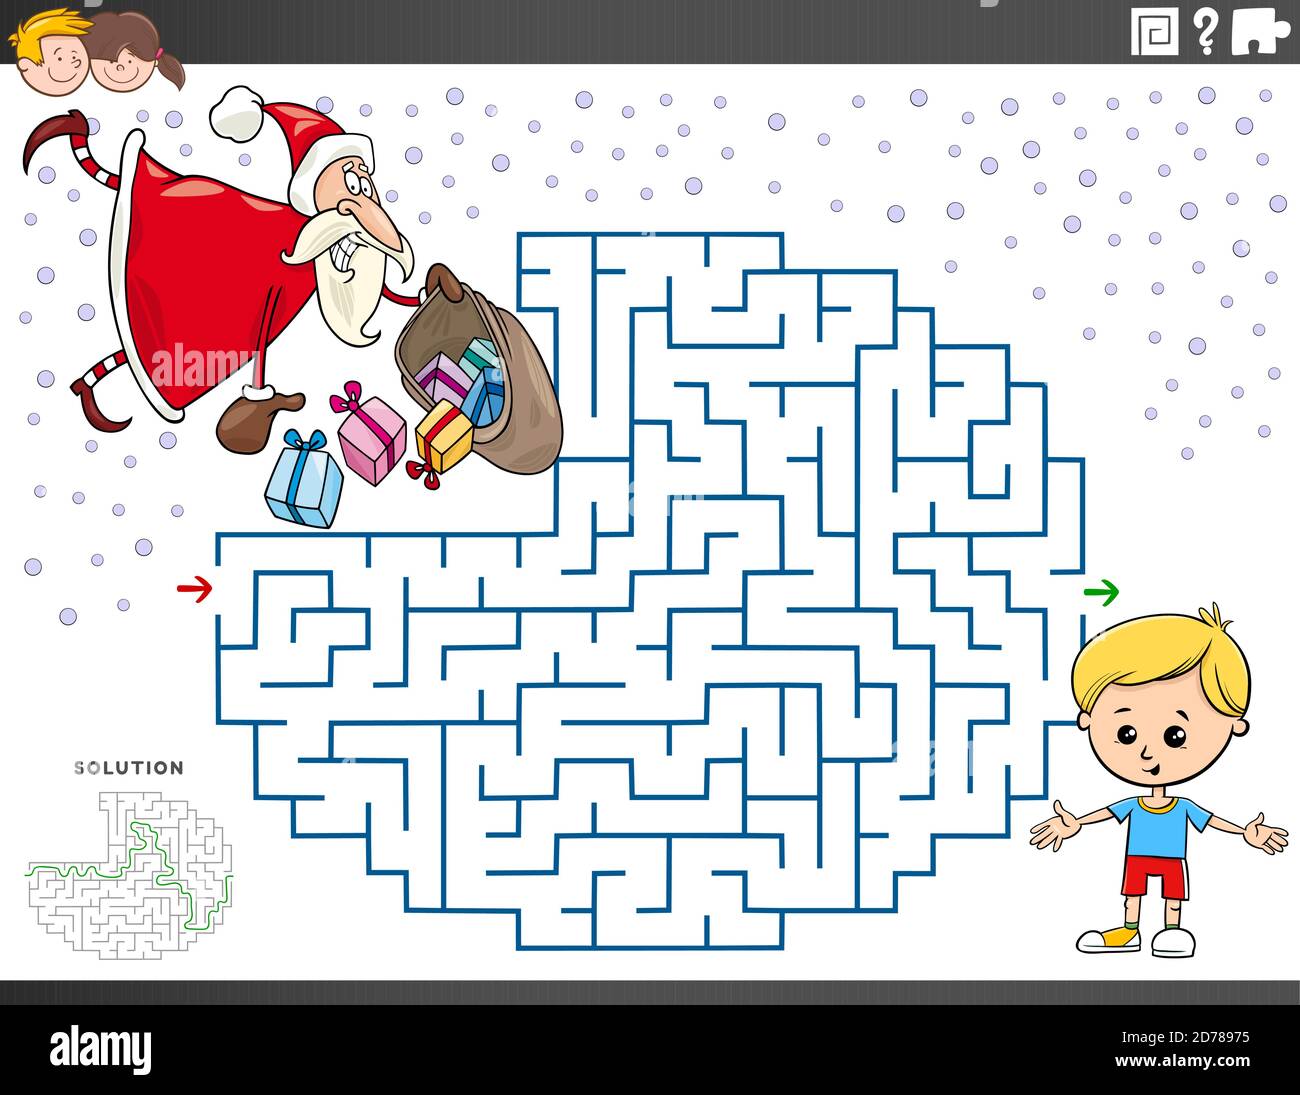 Dessin animé Illustration du jeu de Puzzle Maze éducatif pour les enfants avec Père Noël avec cadeaux de Noël Illustration de Vecteur